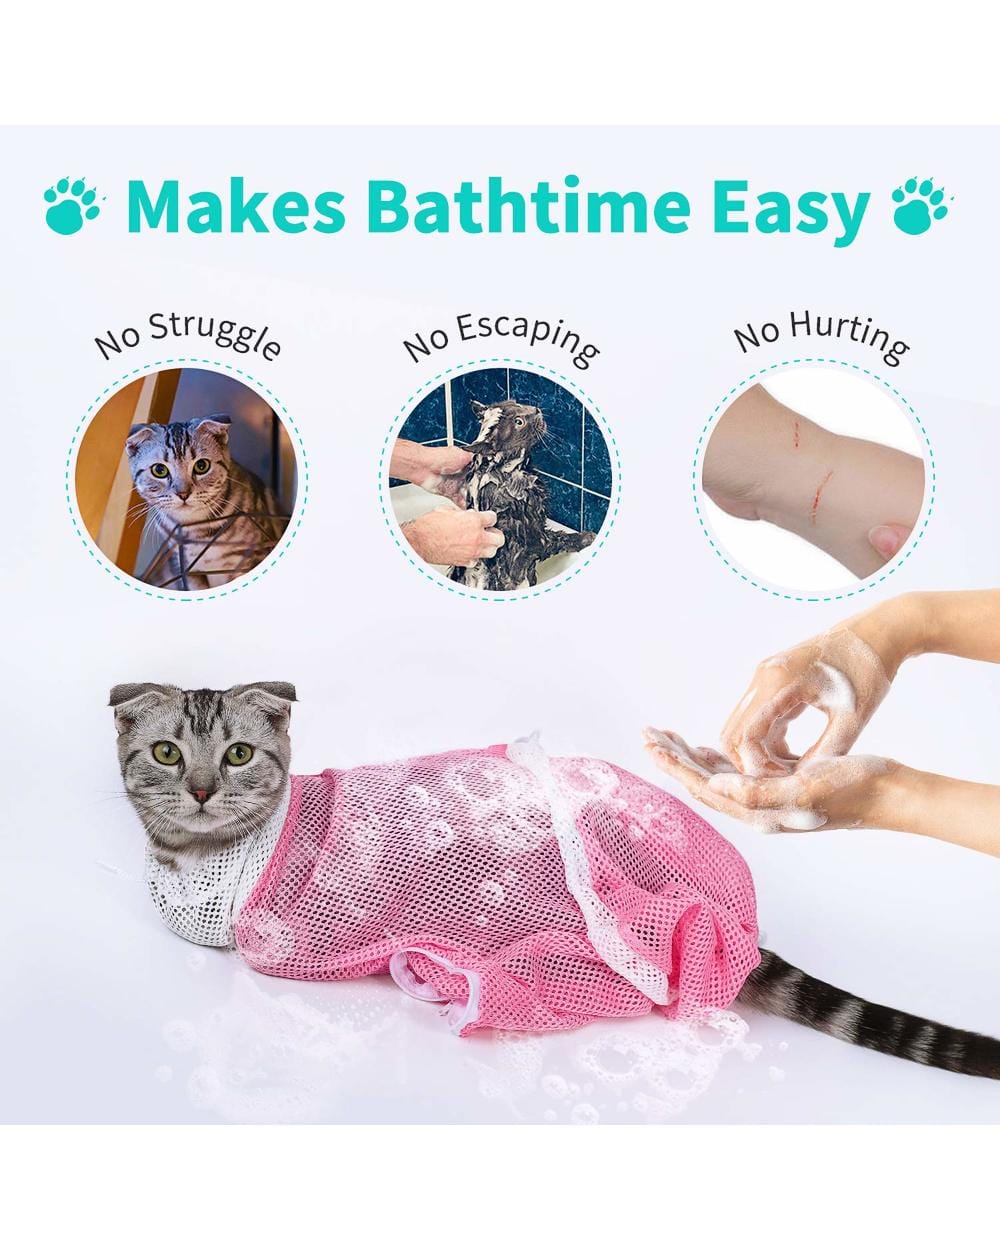 2nd Half Price - Multi-functional Pet Grooming Bath Bag